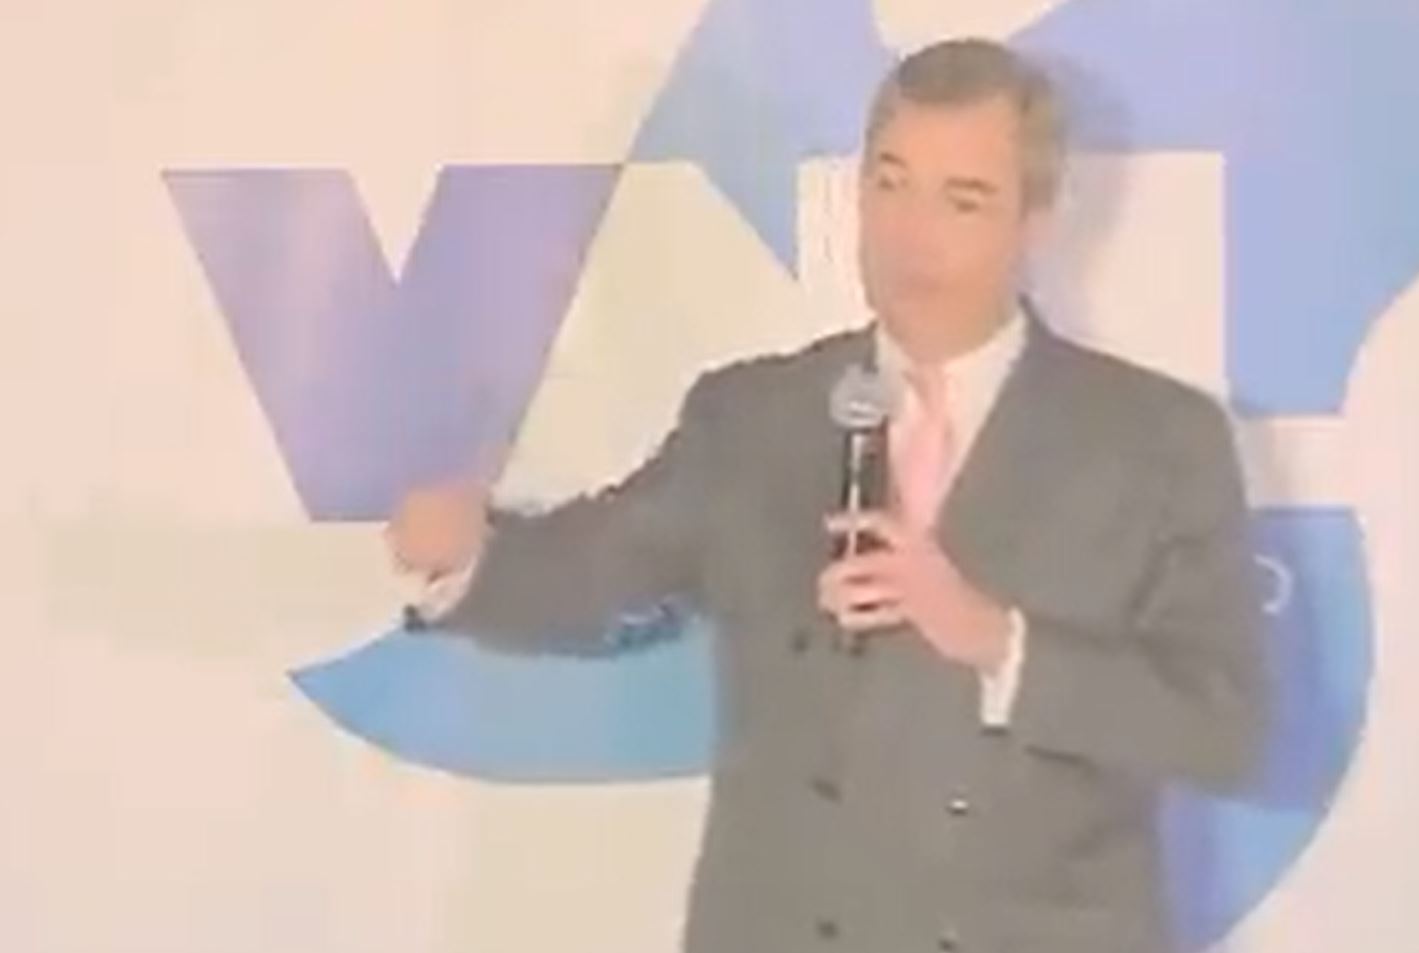 Piers Morgan compartió en Twitter un video de Nigel Farage calumniando a Donald Trump